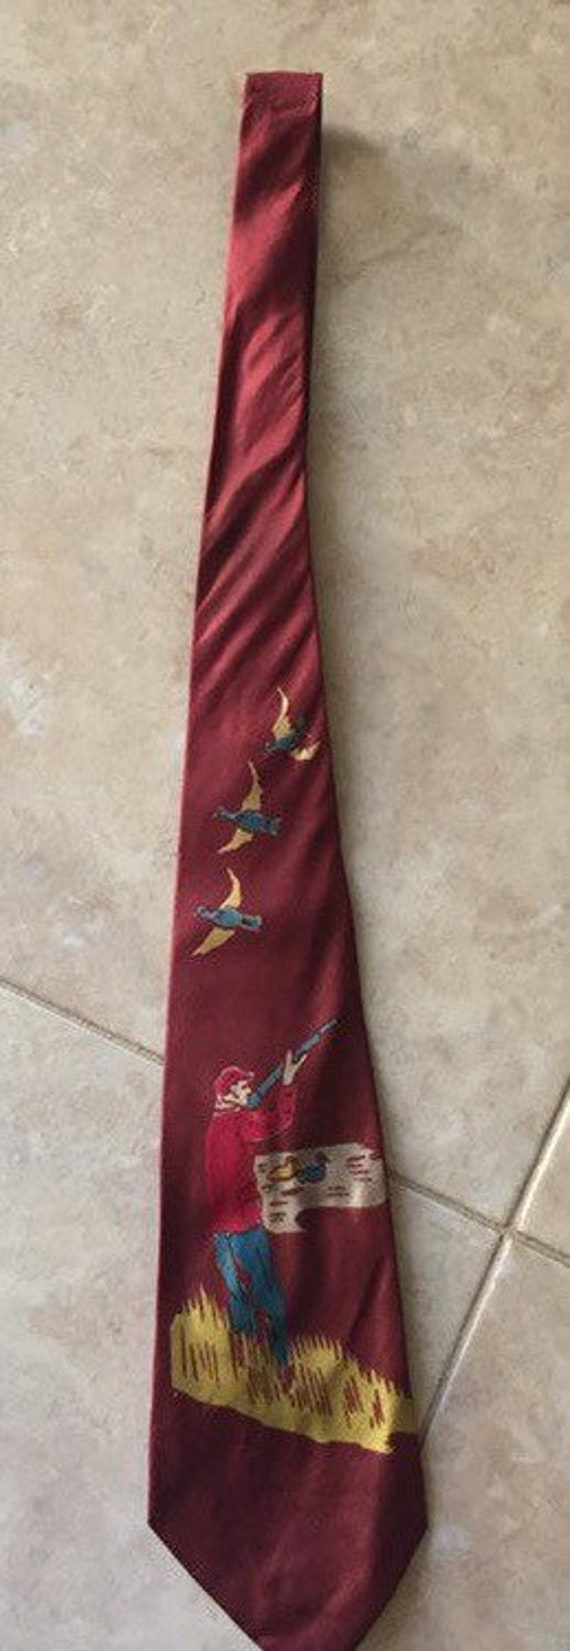 Vintage 1940s Necktie